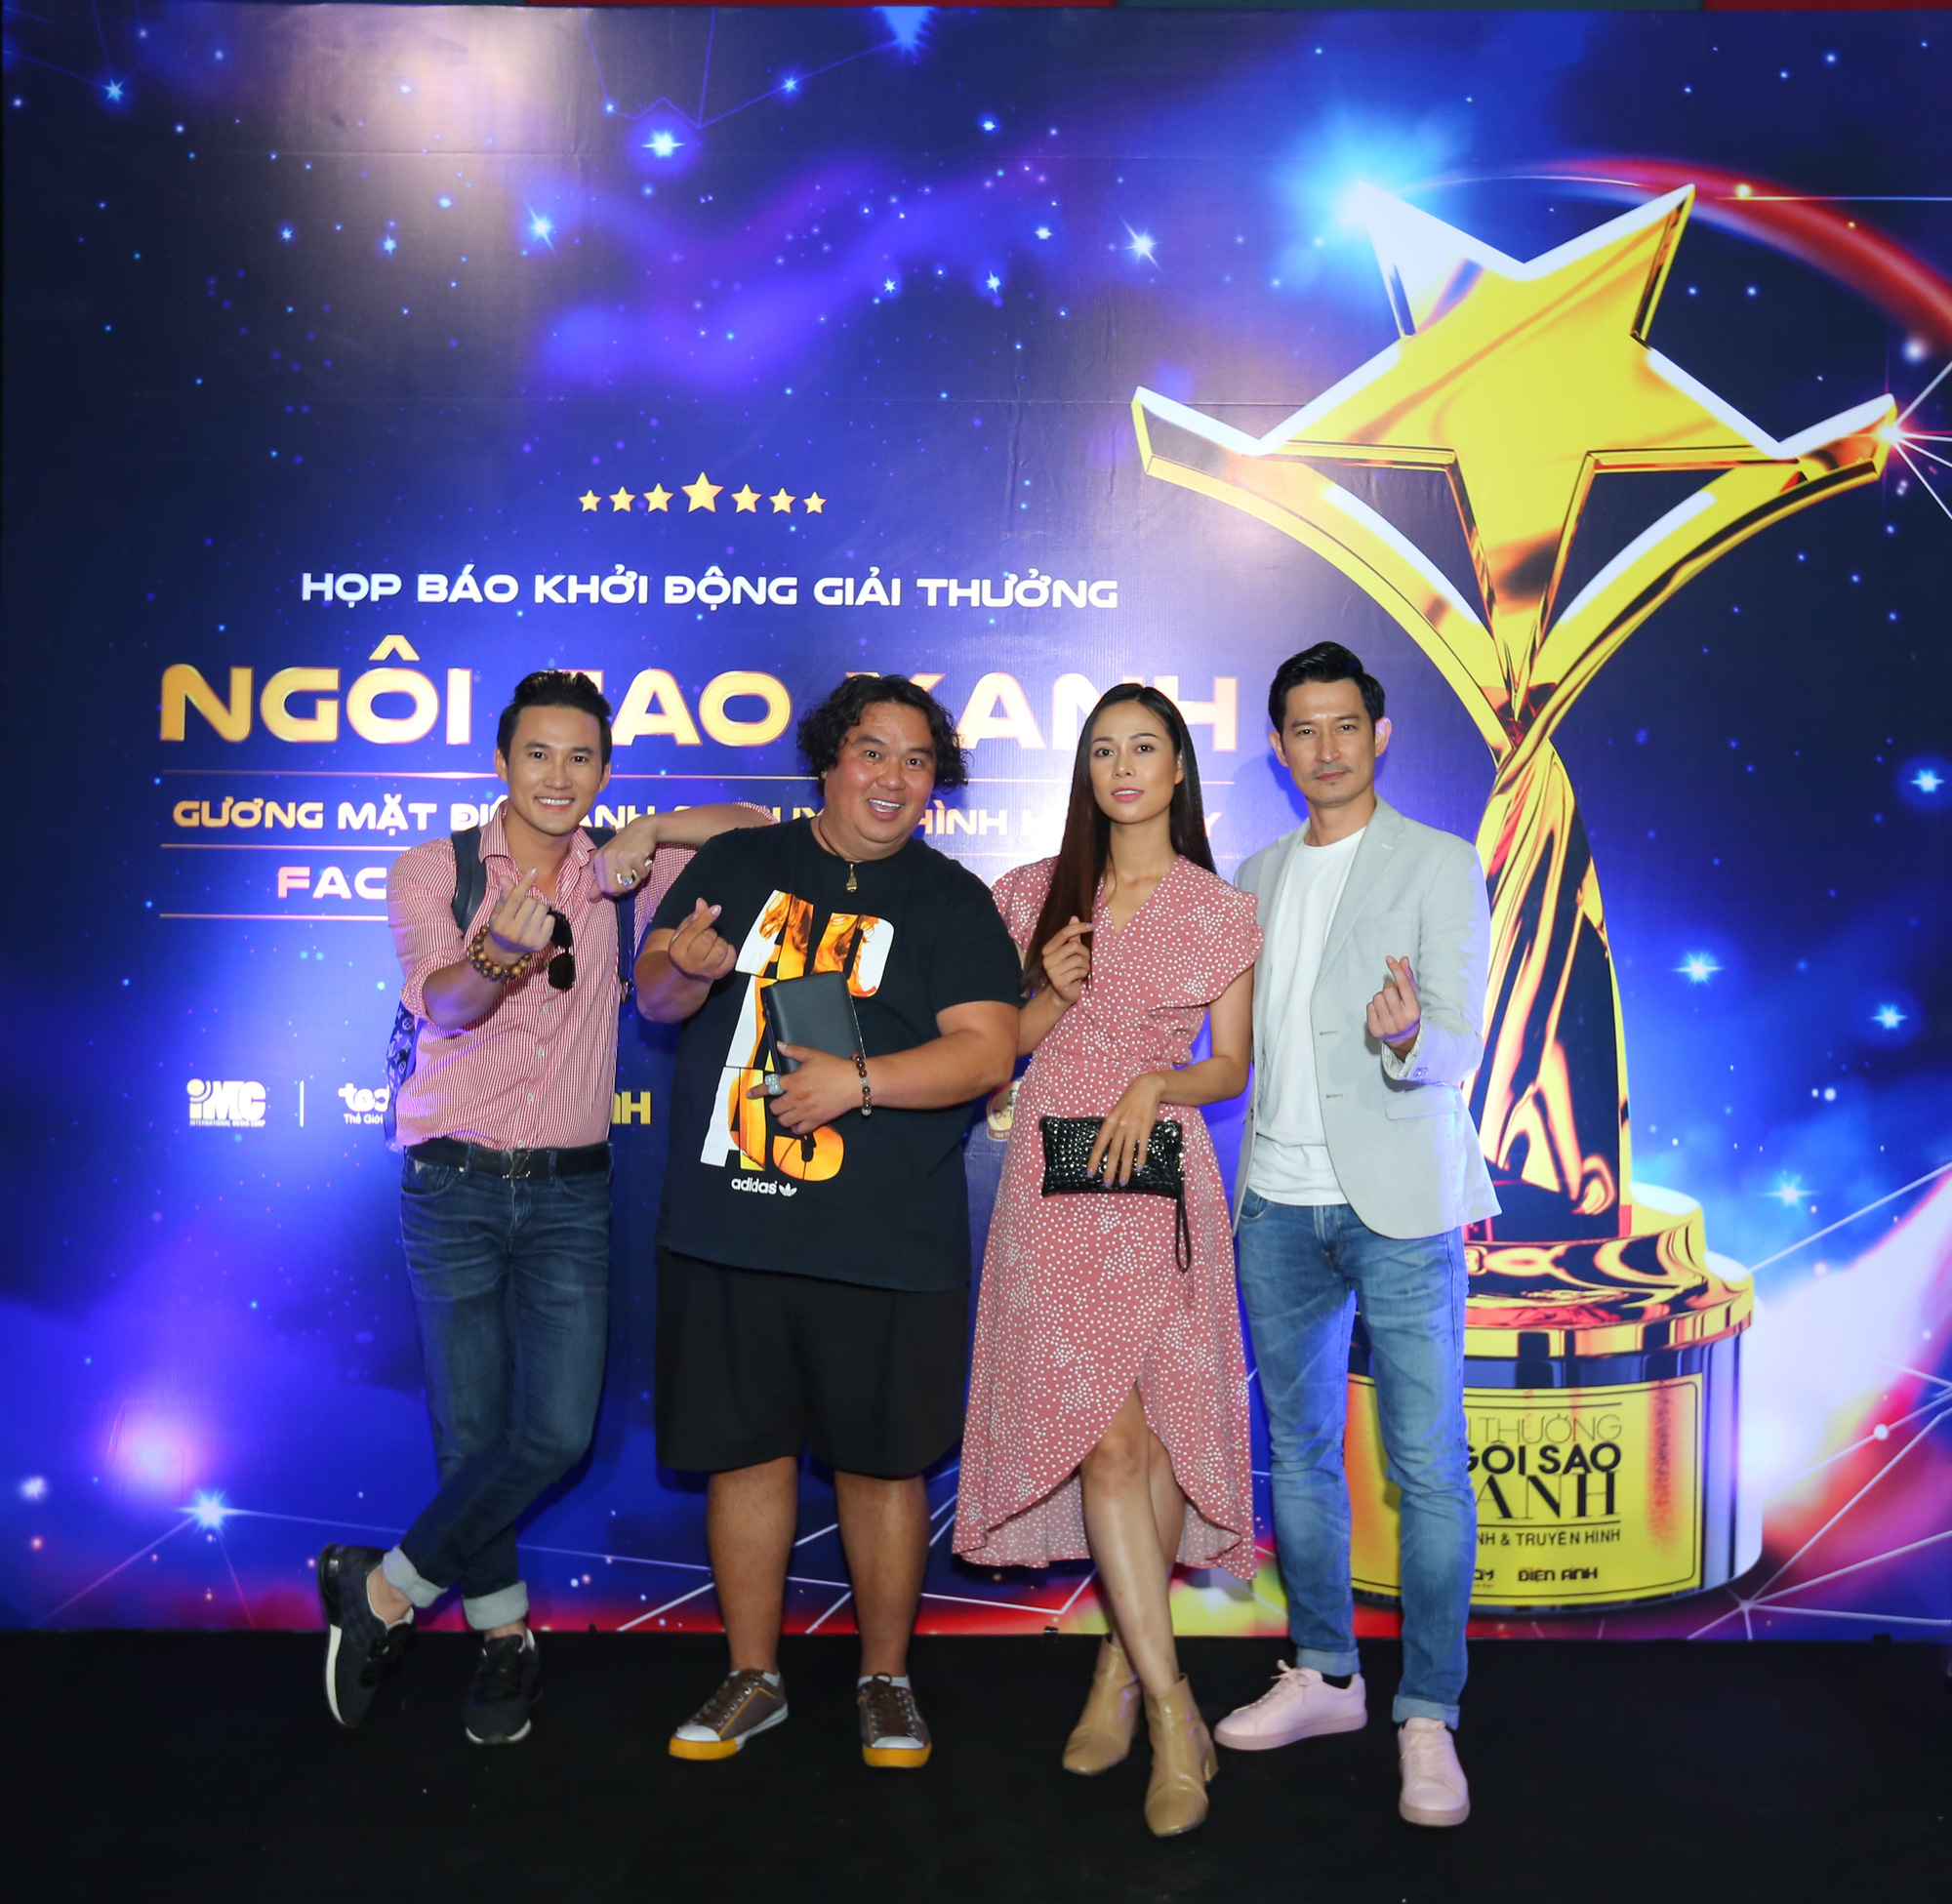 Kiều Minh Tuấn, Thái Hòa, Trần Nghĩa, Ninh Dương Lan Ngọc có mặt trong bảng đề cử Ngôi sao xanh 2020 - Ảnh 4.